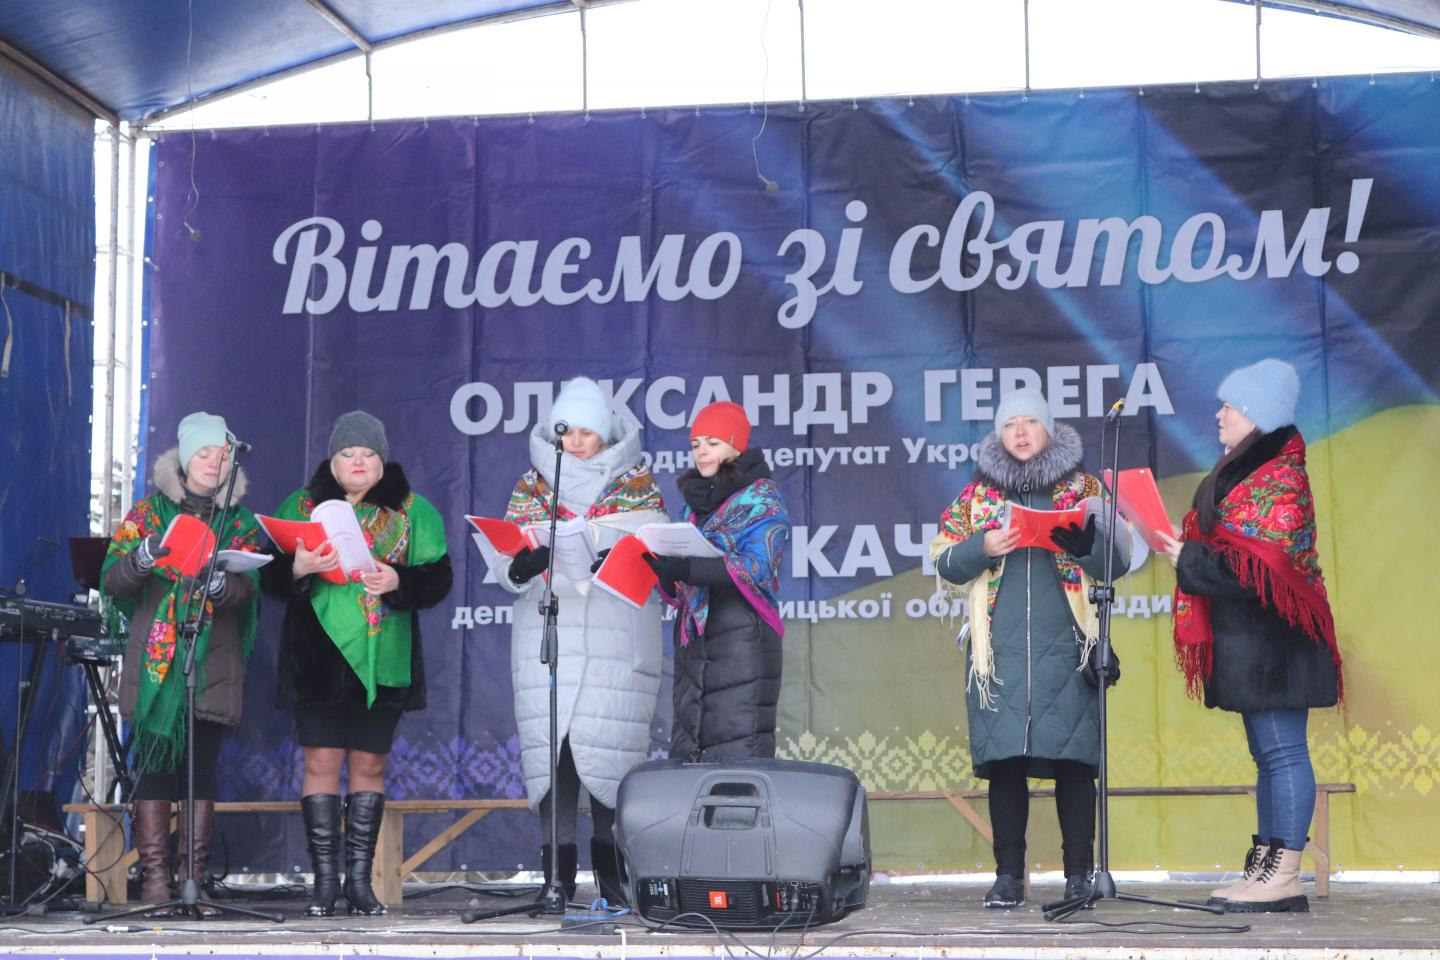 http://dunrada.gov.ua/uploadfile/archive_news/2021/12/27/2021-12-27_3761/images/images-21303.jpg